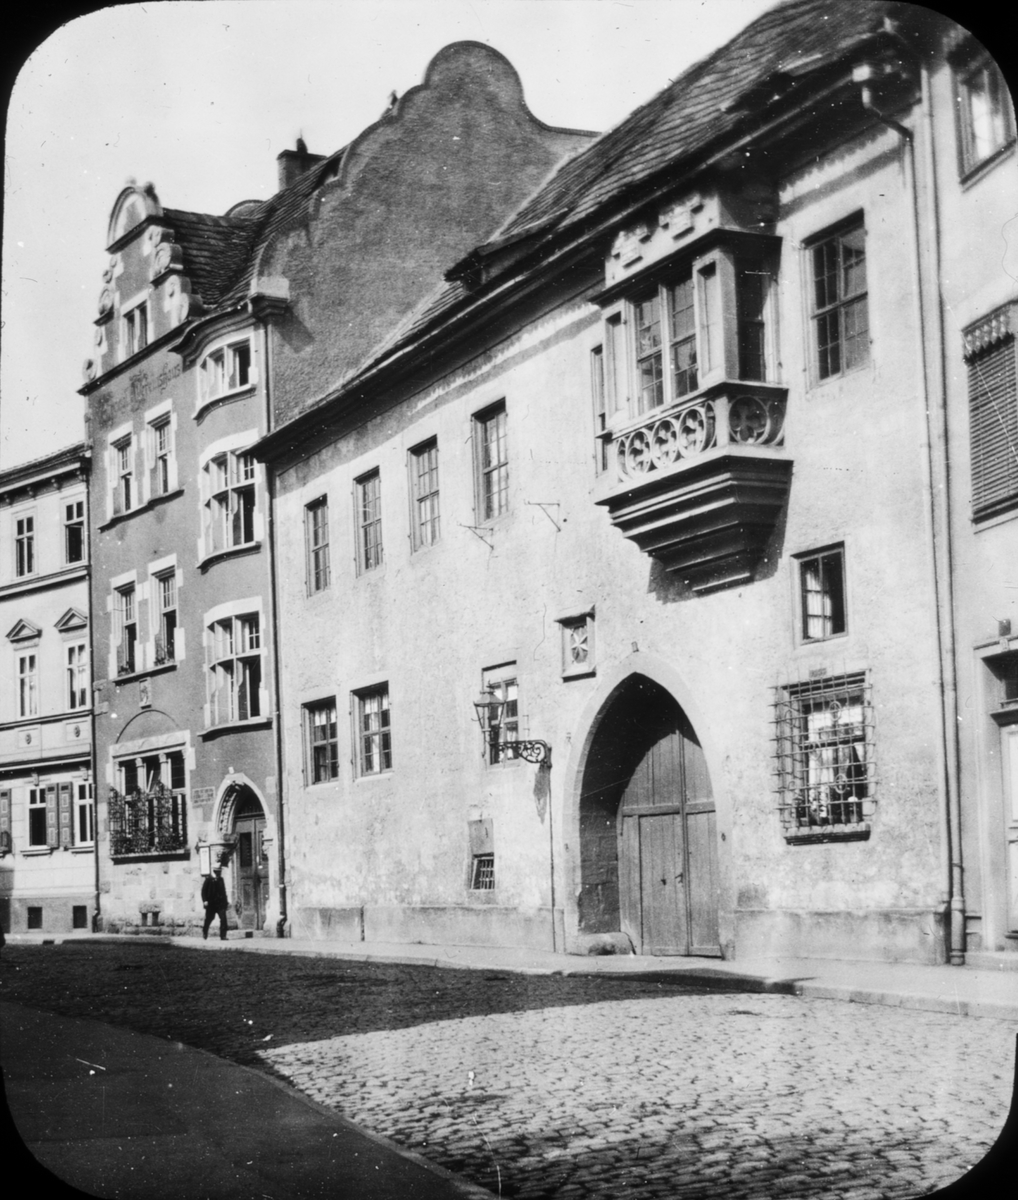 Skioptikonbild med motiv från Erfurt.
Bilden har förvarats i kartong märkt: Resan 1908. Erfurt 8. 16